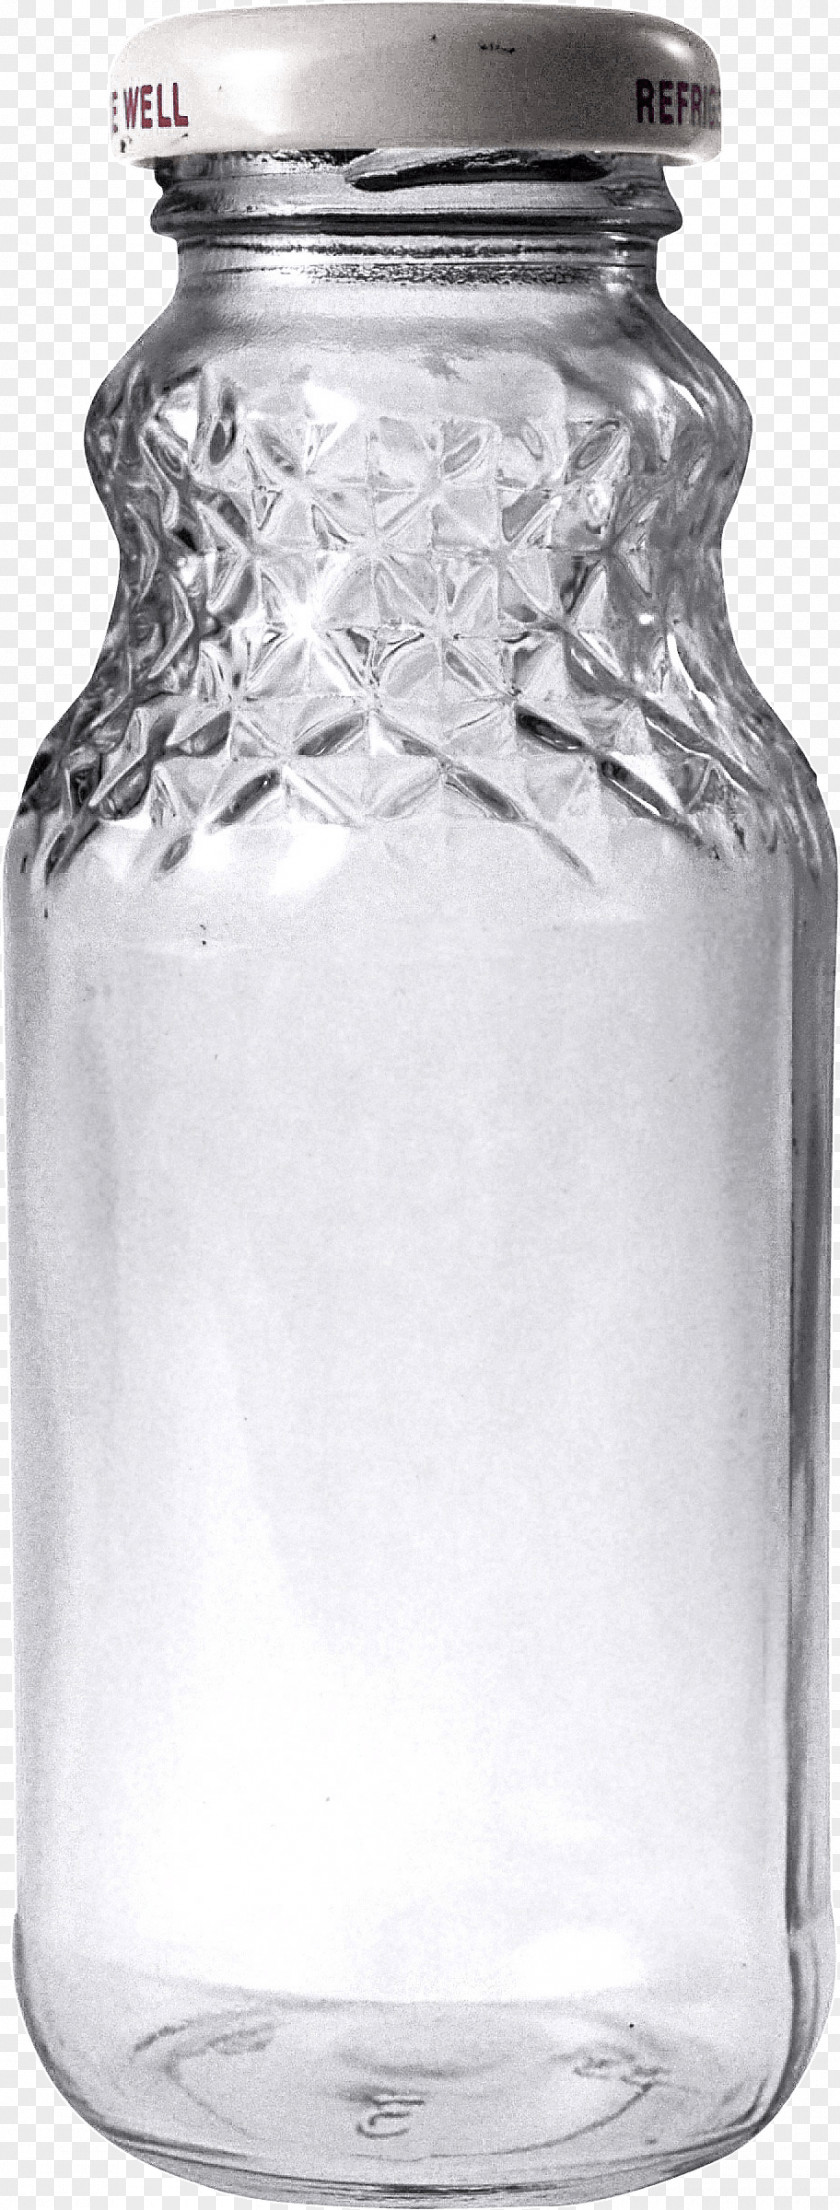 Empty Glass Bottle Image Clip Art PNG